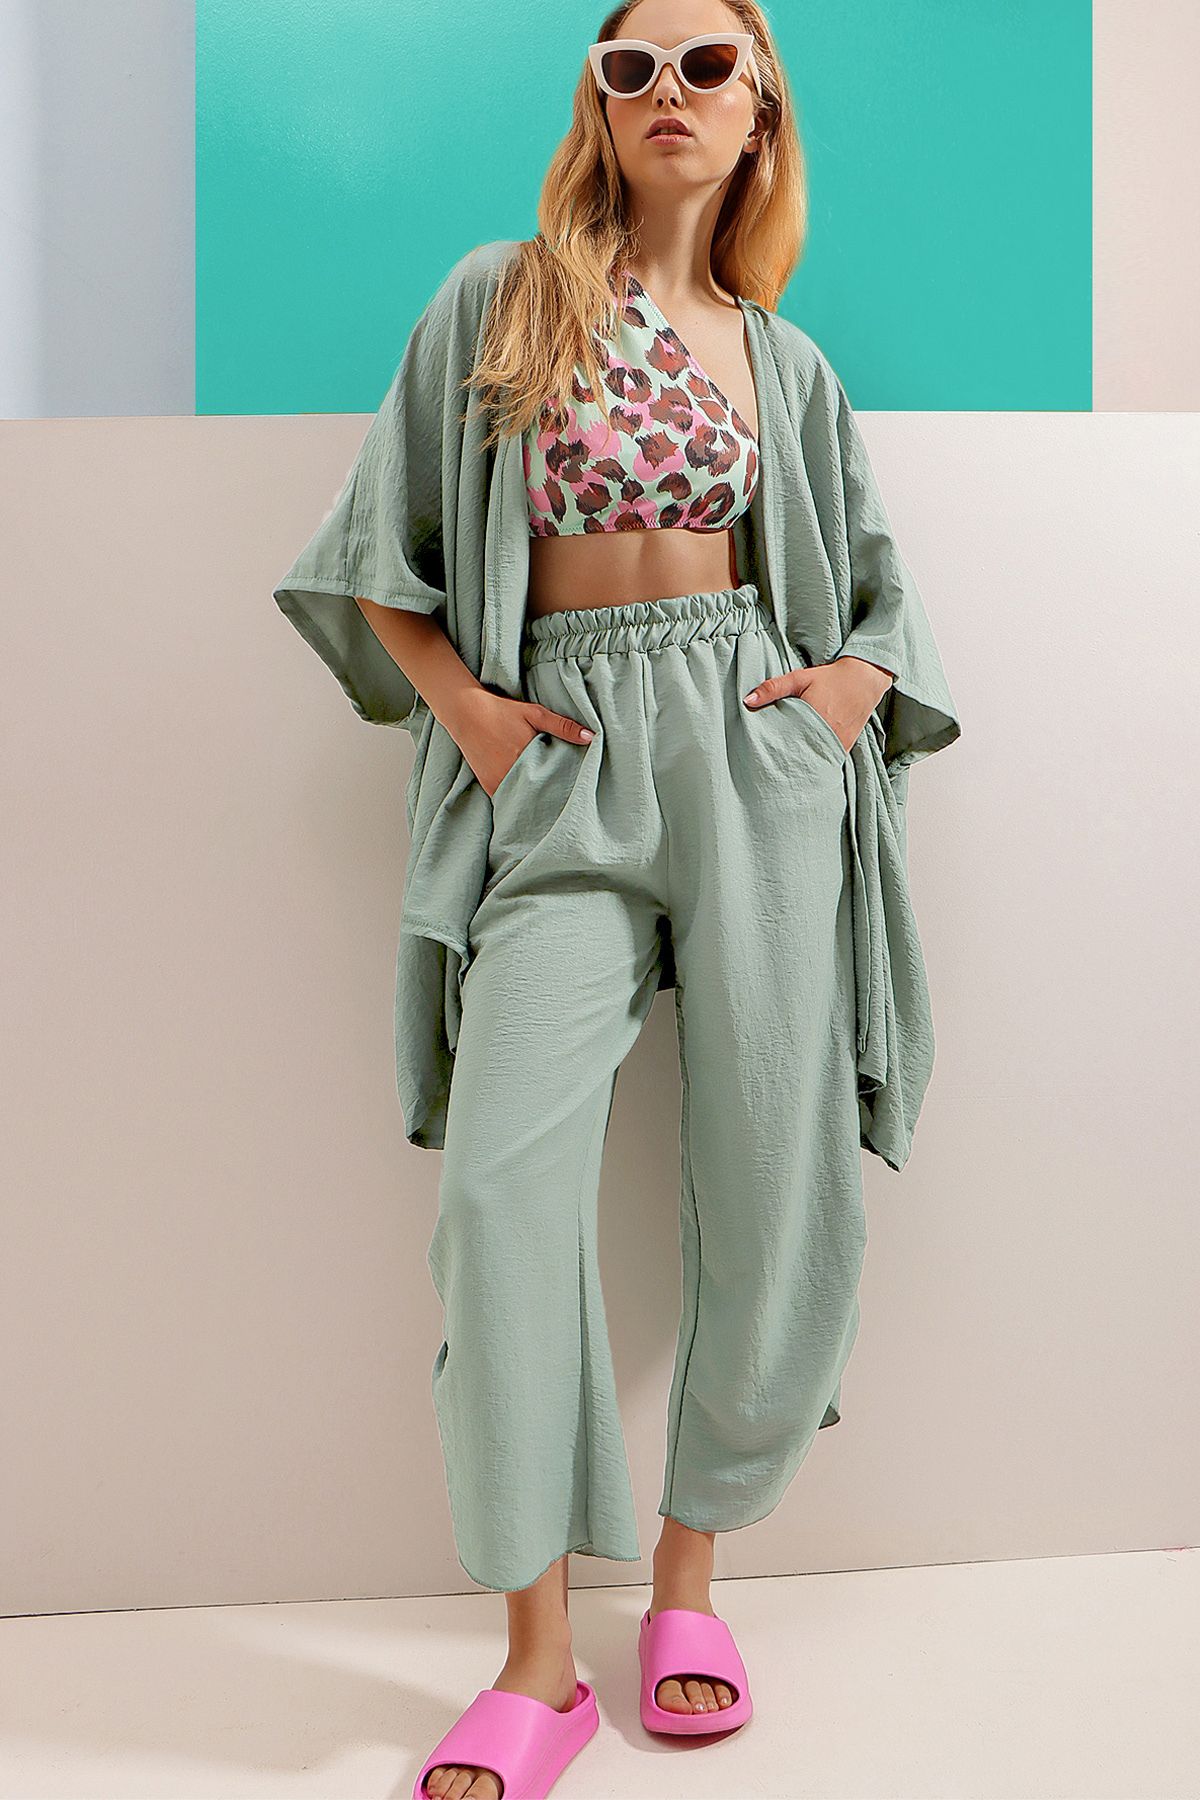 Trend Alaçatı Stili Kadın Su Yeşili Paçası Yırtmaçlı Kendinden Dokulu Pantolon Ve Ceket İkili Takım ALC-752-001